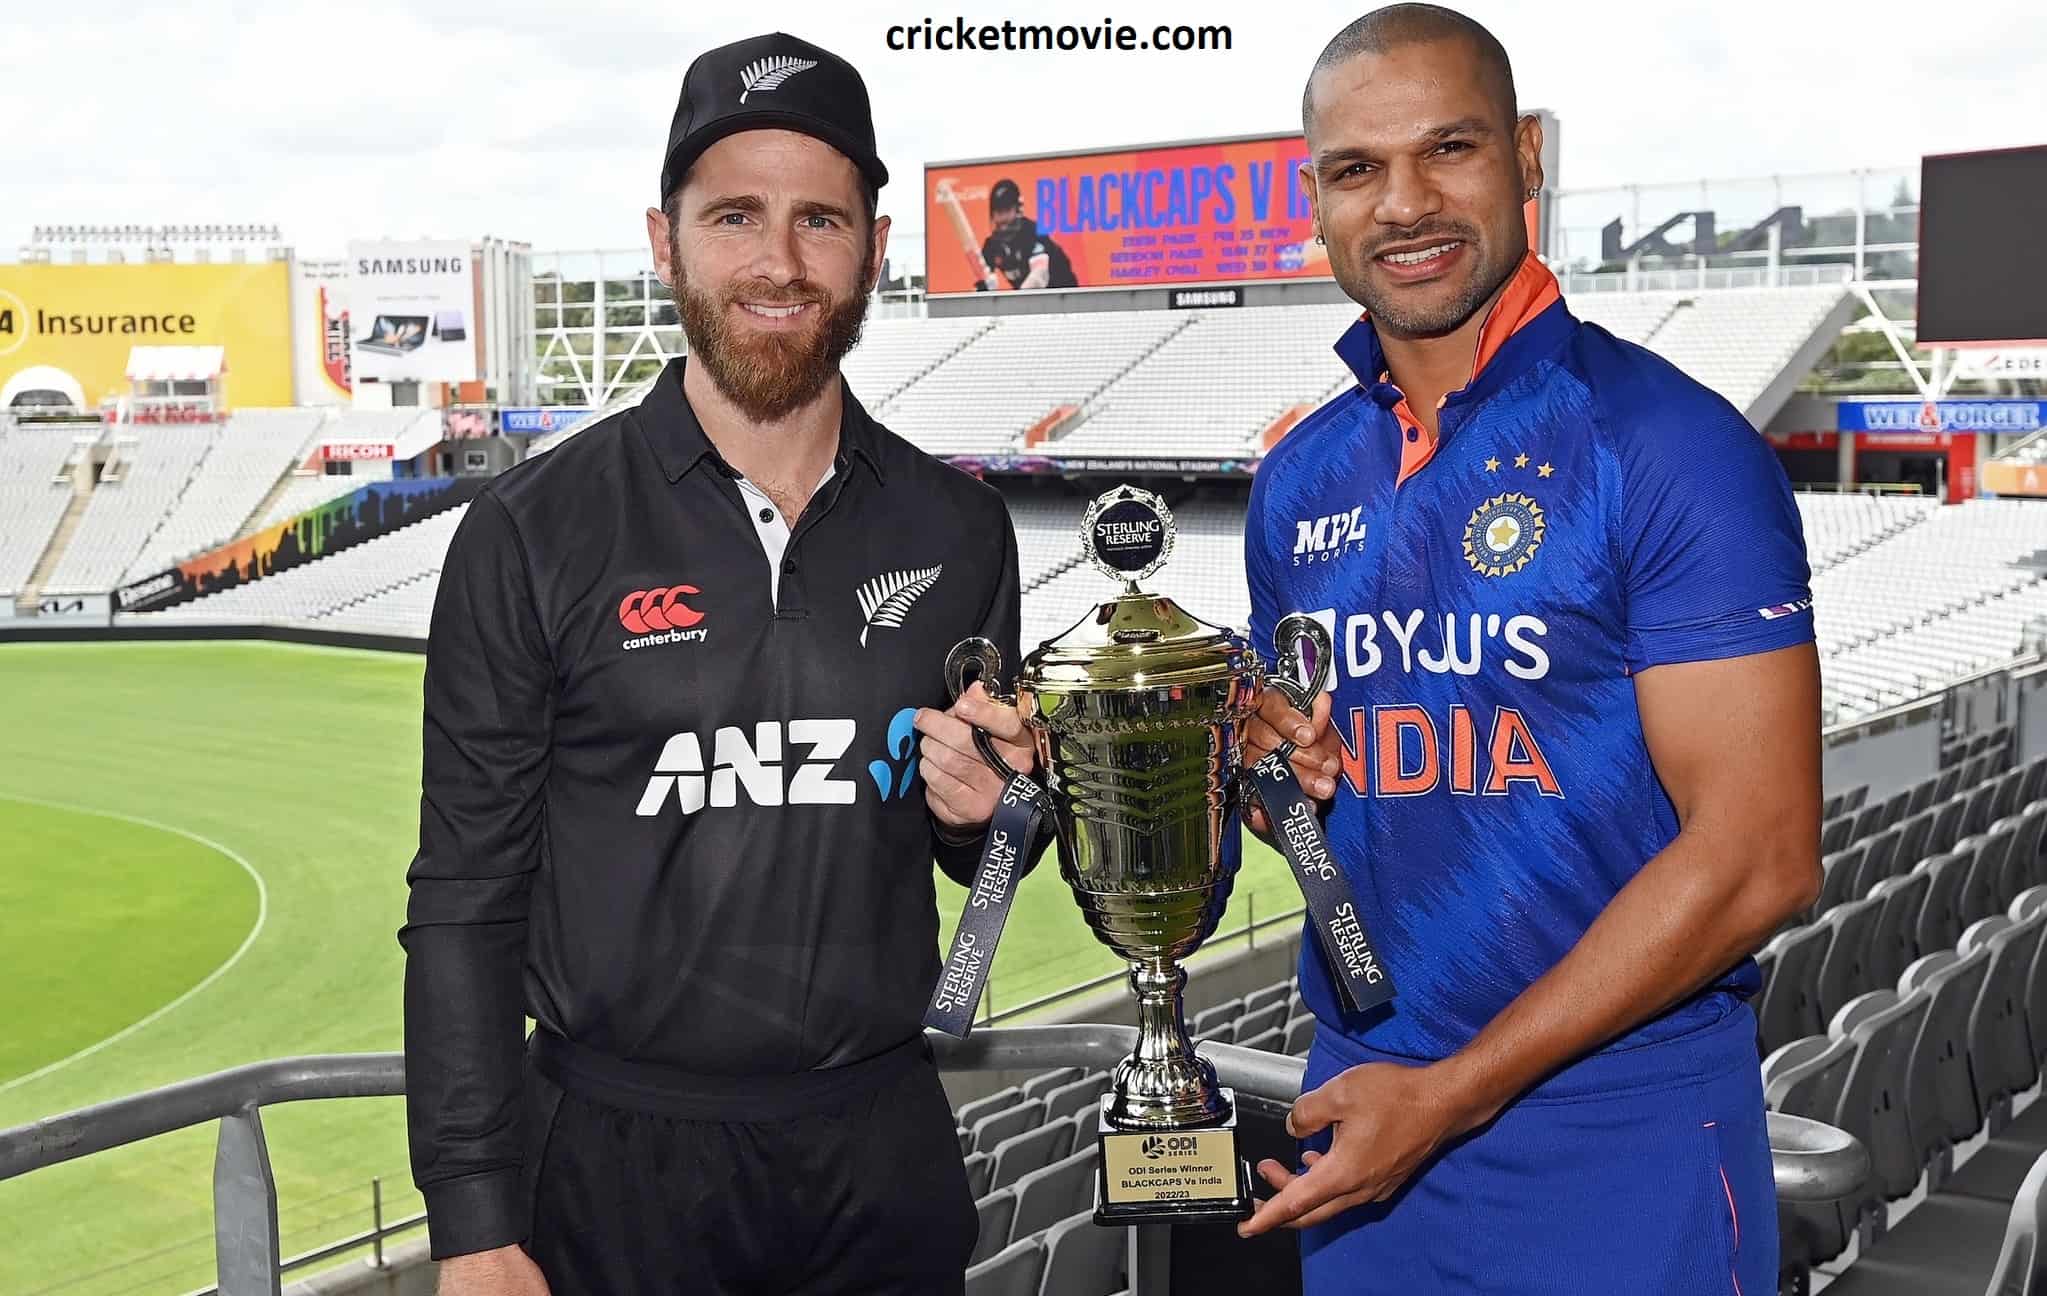 New Zealand beat India by 7 wickets-cricketmovie.com